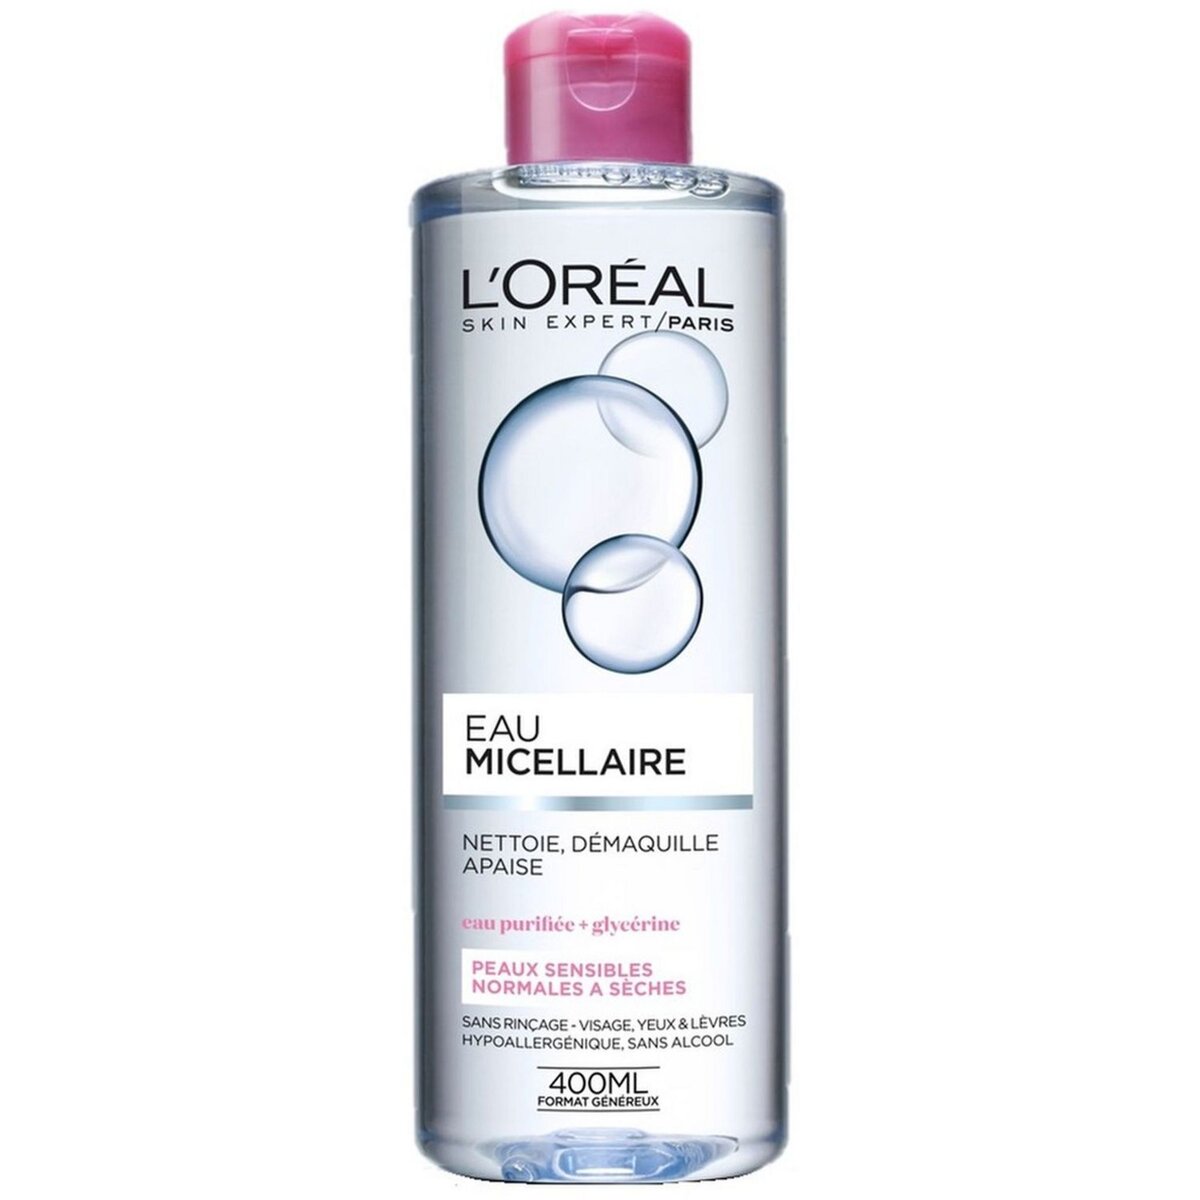 L'OREAL L'Oréal dermo eau démaquillante micellaire soft 400ml